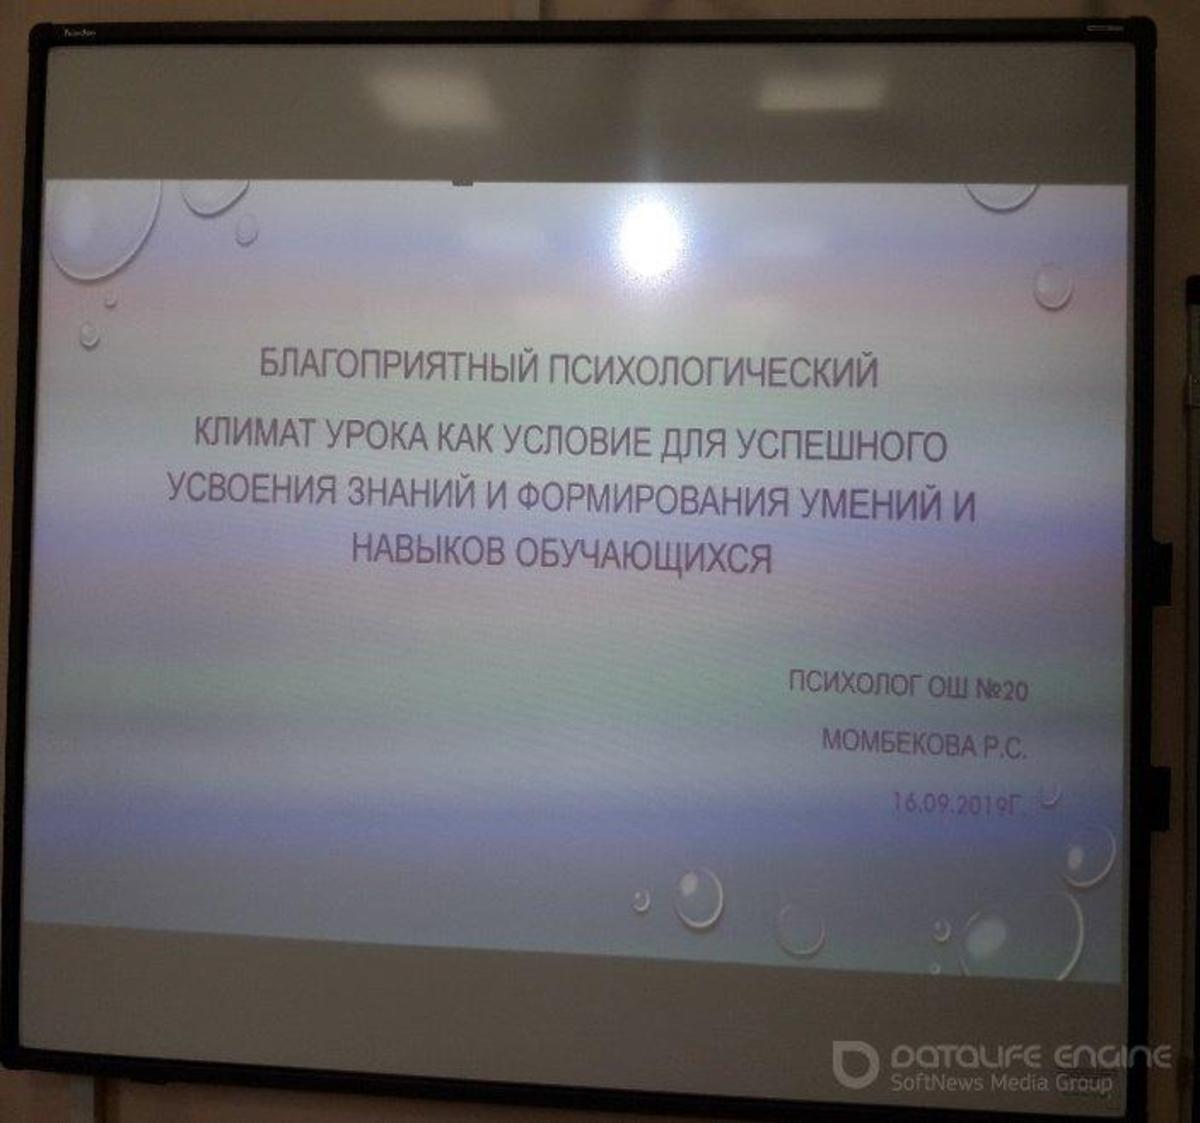 В КГУ ОШ №20 16.09.2019г. на совещании педколлектива психолог школы- Момбекова Р.С. провела семинар на тему: